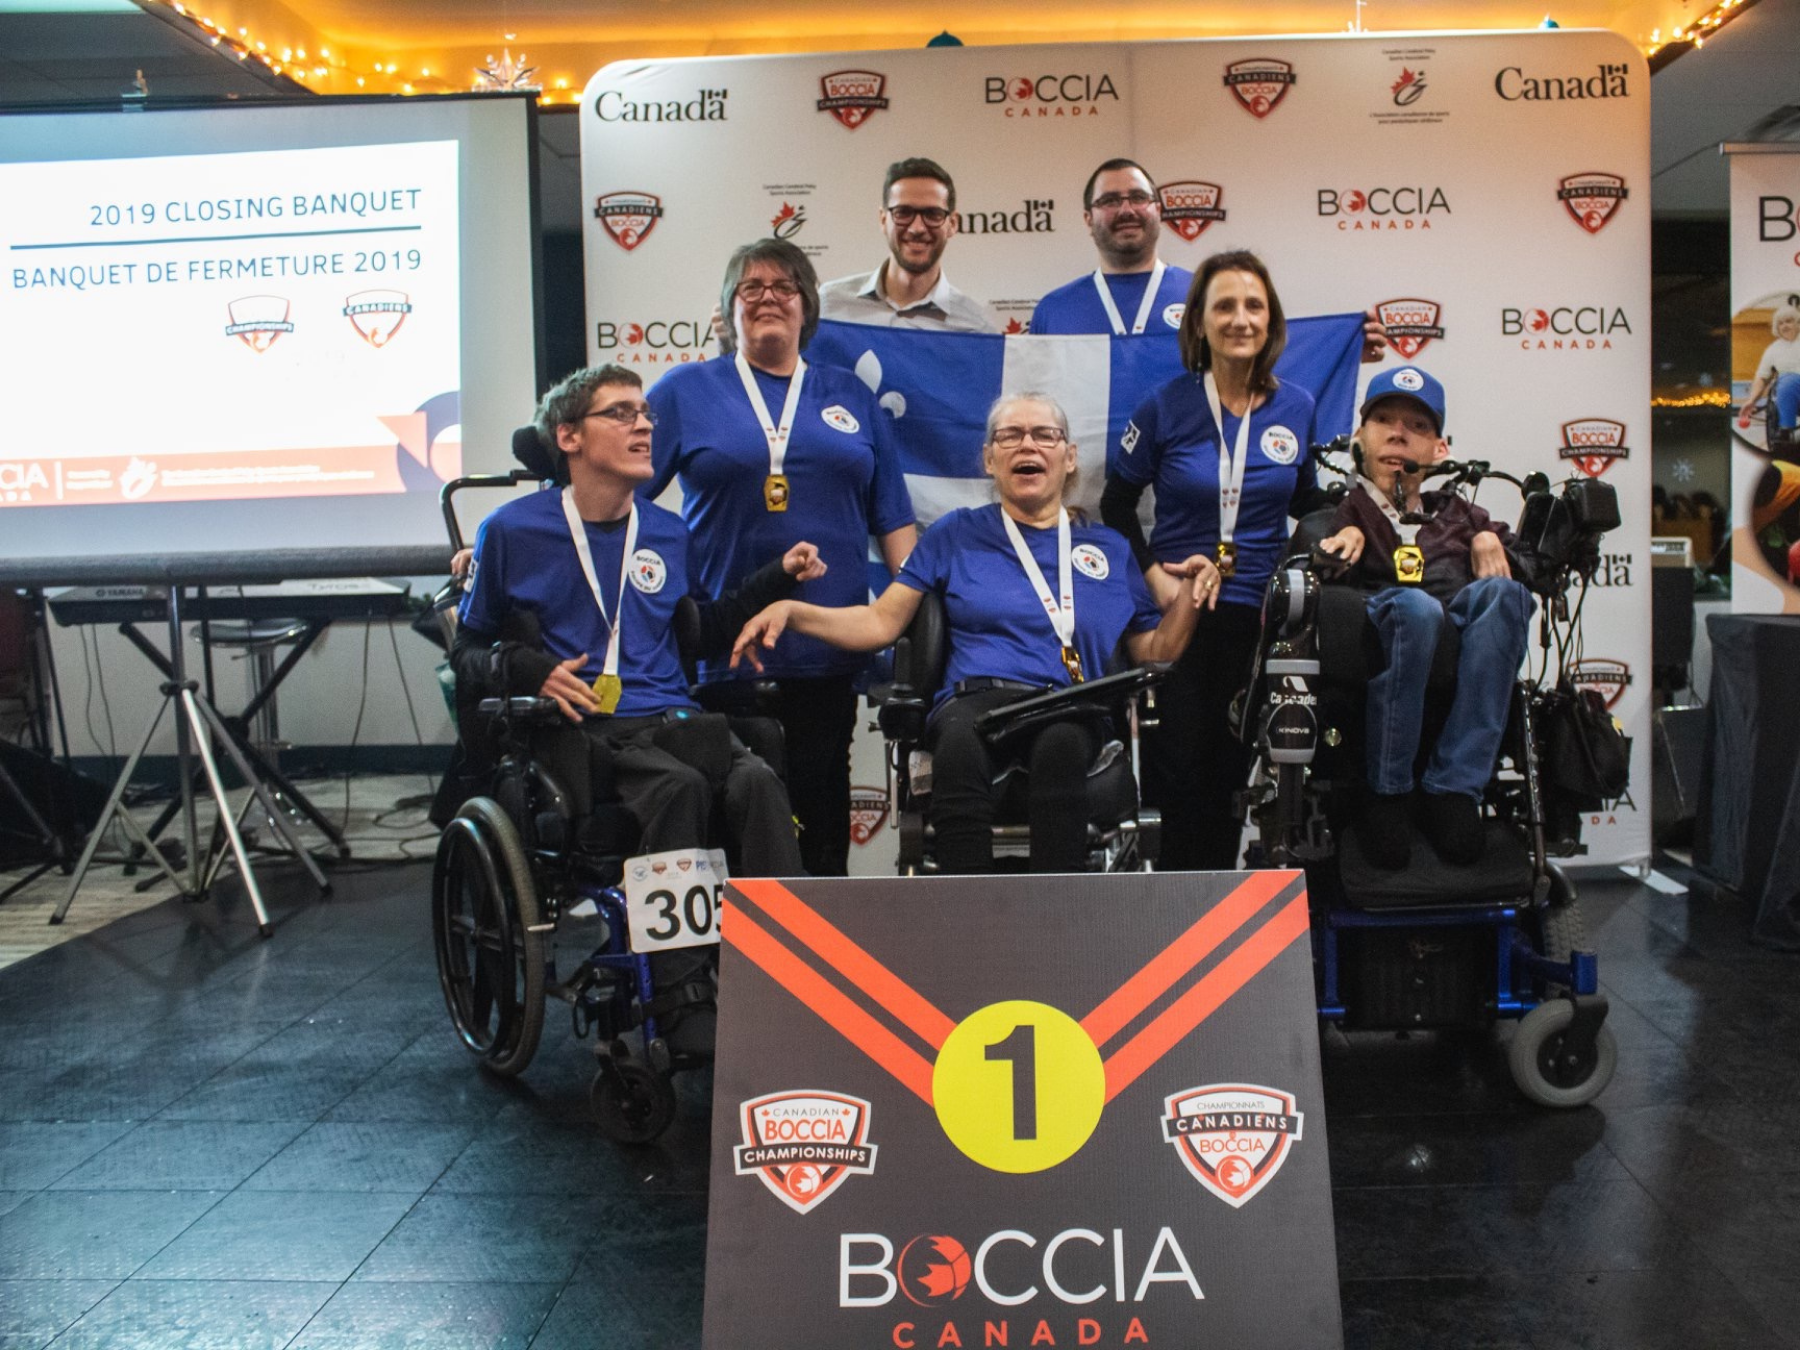 Quebec boccia team celebrating their wins at 2019 Canadian Boccia Championships | L'équipe de boccia du Québec célèbre ses victoires aux Championnats canadiens de boccia 2019